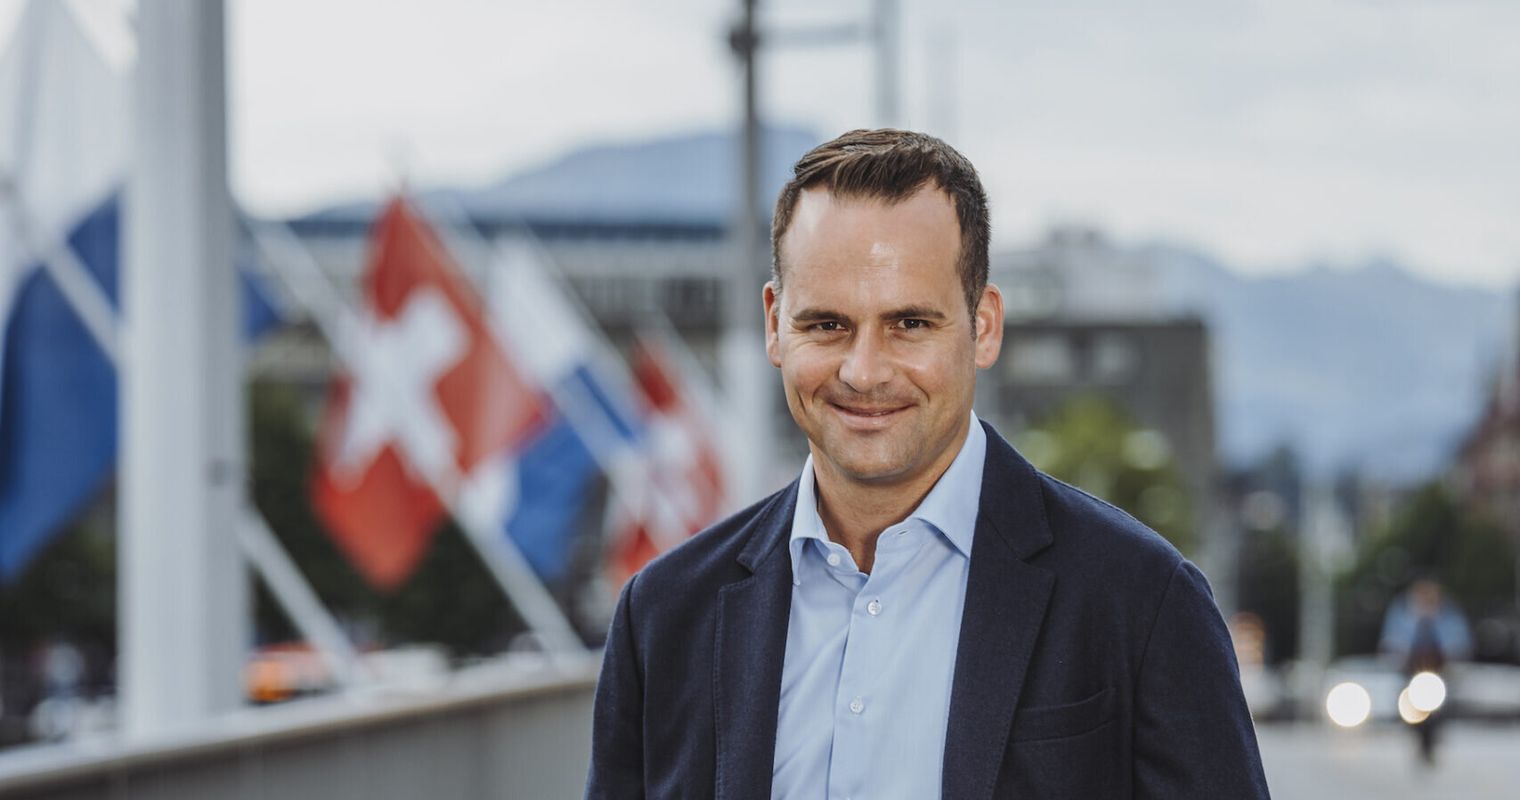 Damian Müller will Steuerabzug für Vollzeitarbeit